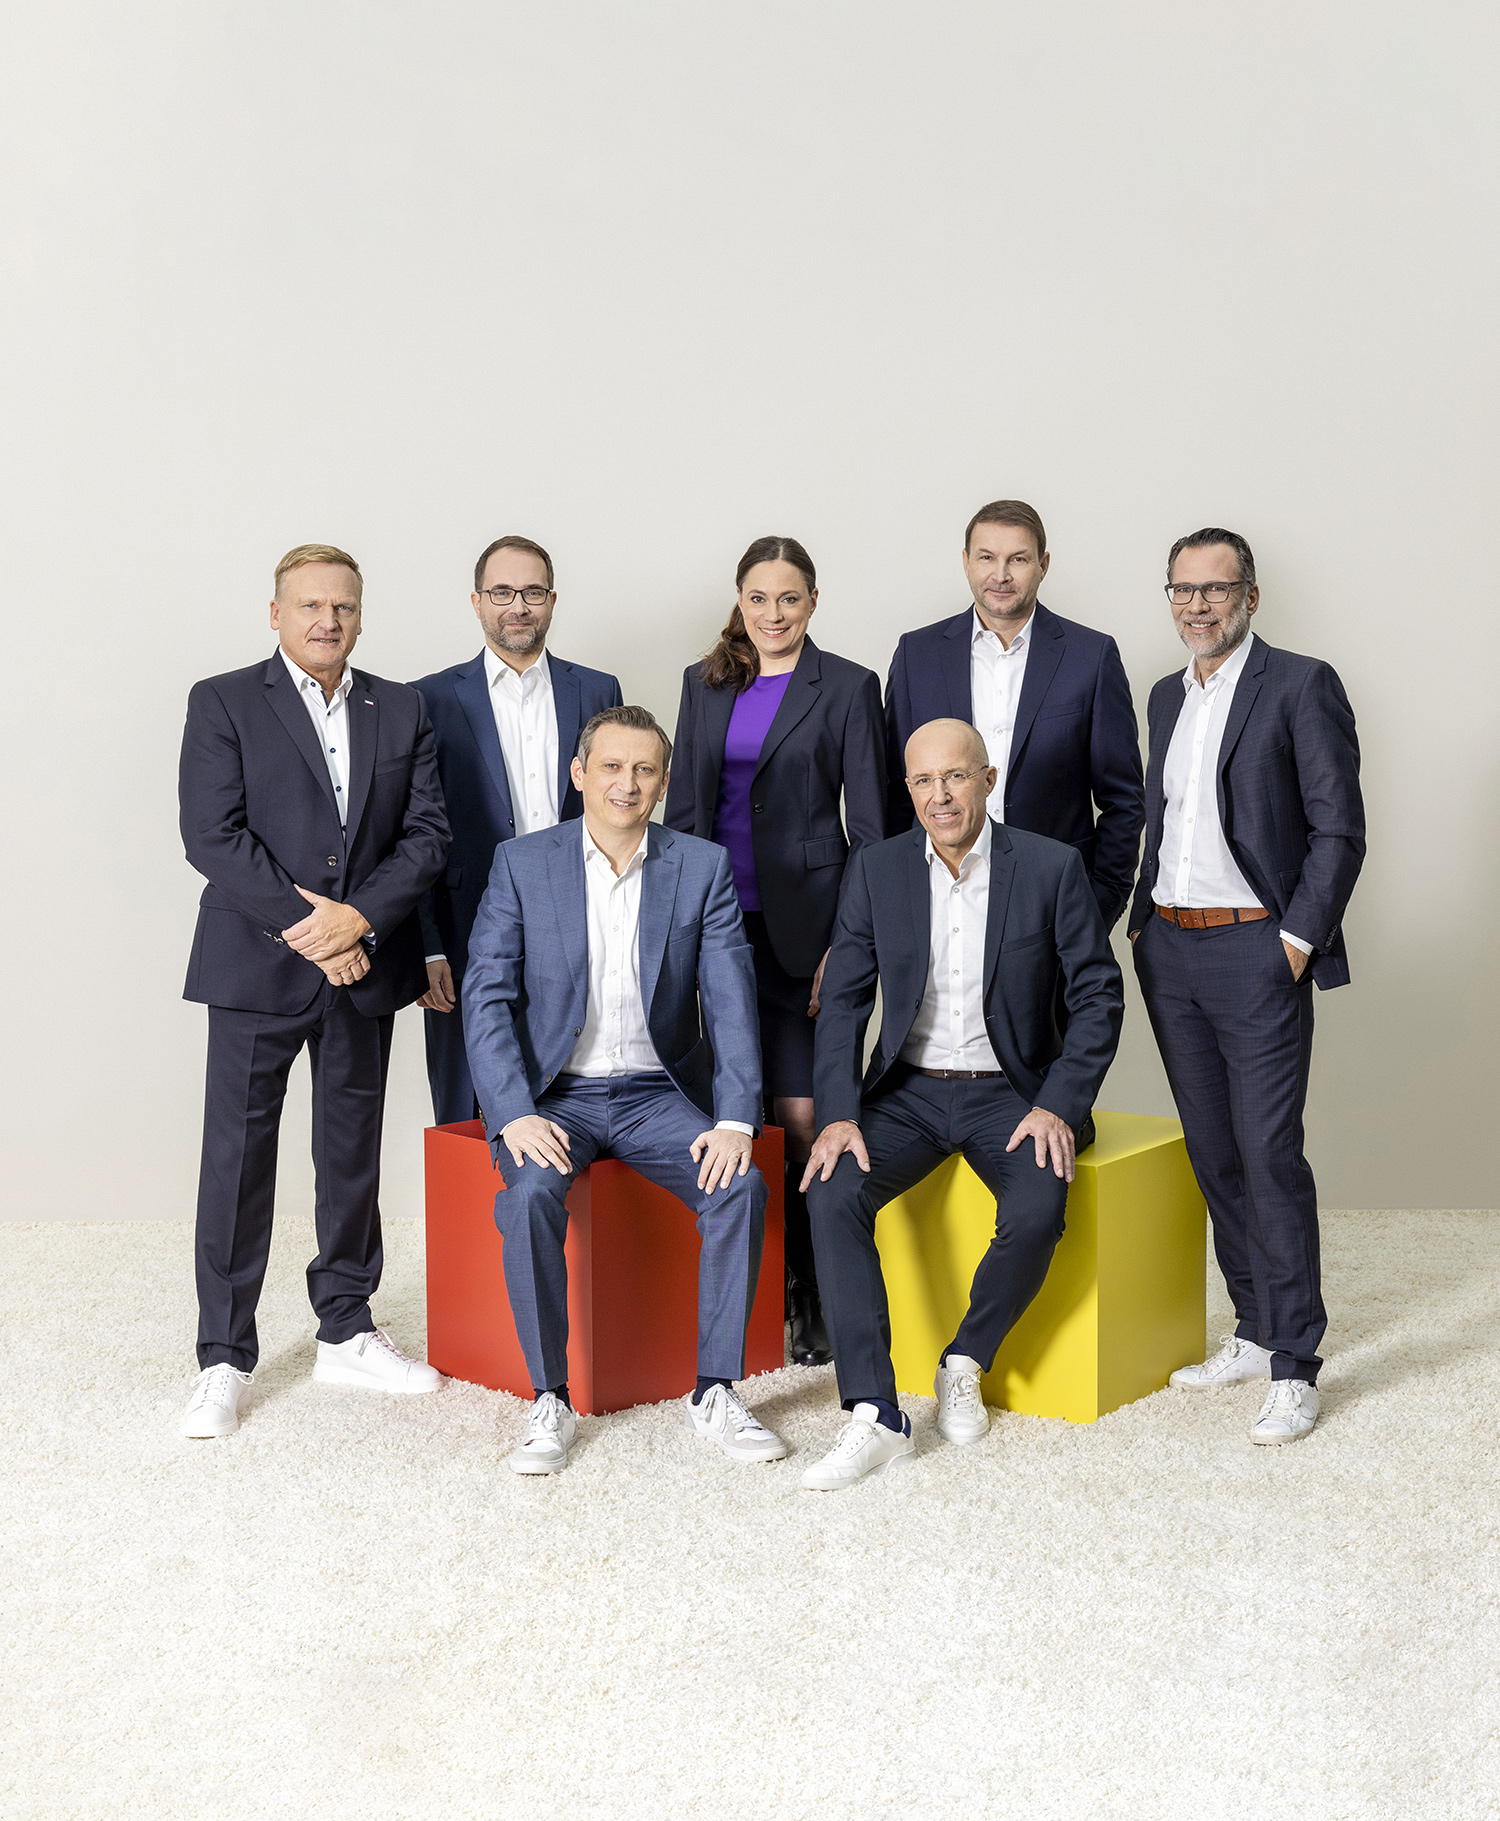 Von links Peter Maly, Telerik Schischmanow, Lionel Souque, Daniela Büchel, Jan Kunath, Hans-Jürgen Moog und Christoph Eltze.